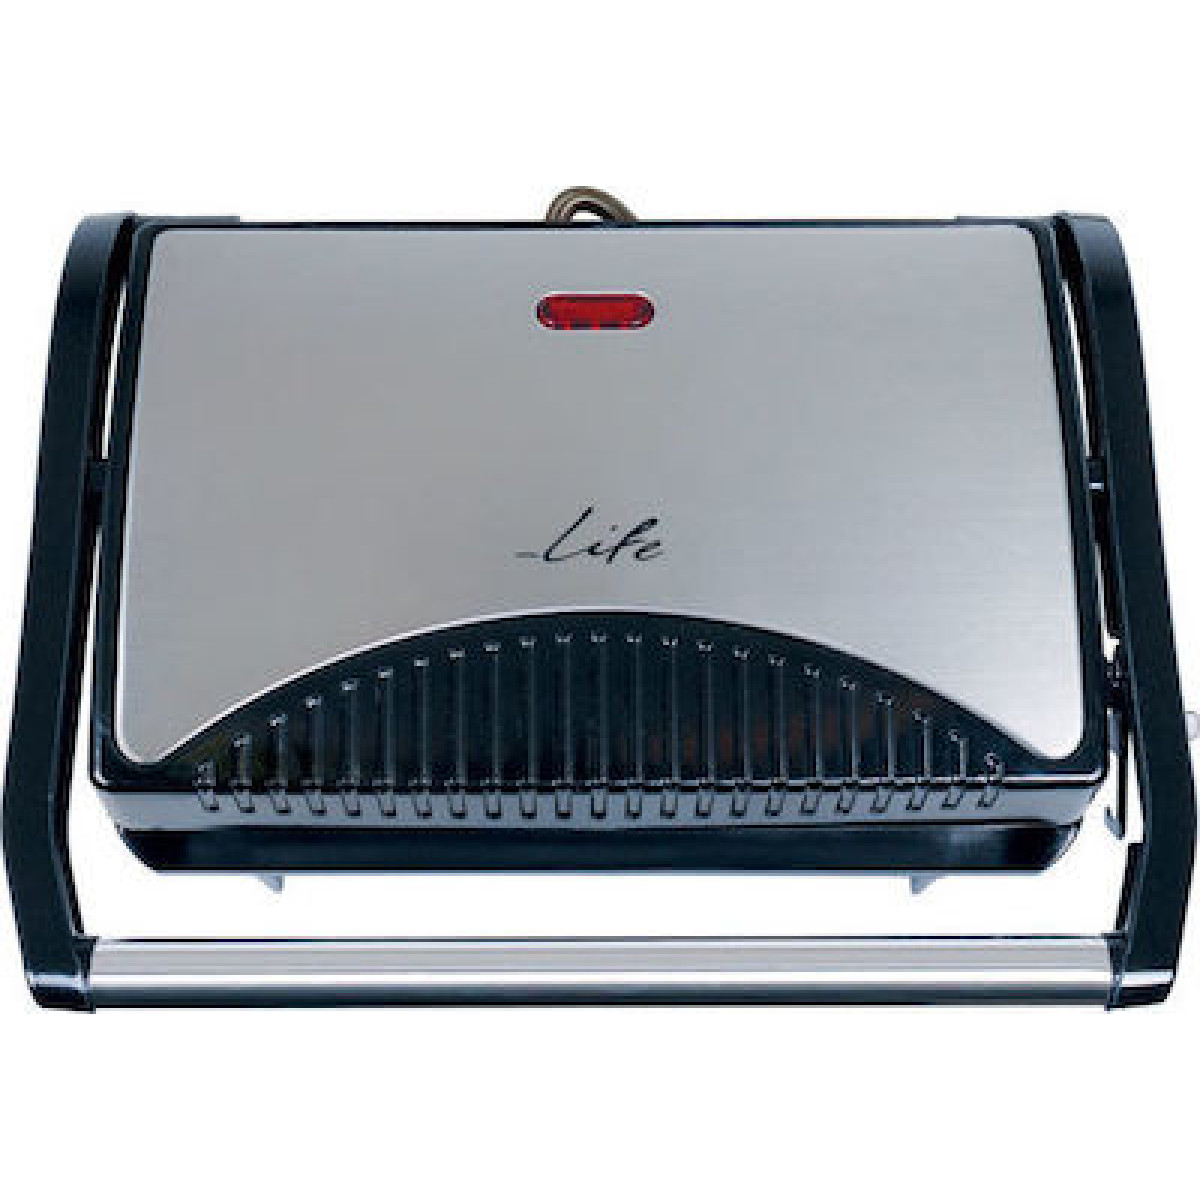 Τοστιέρα Life STG-100 inox με grill πλάκες 700W Τοστιέρες